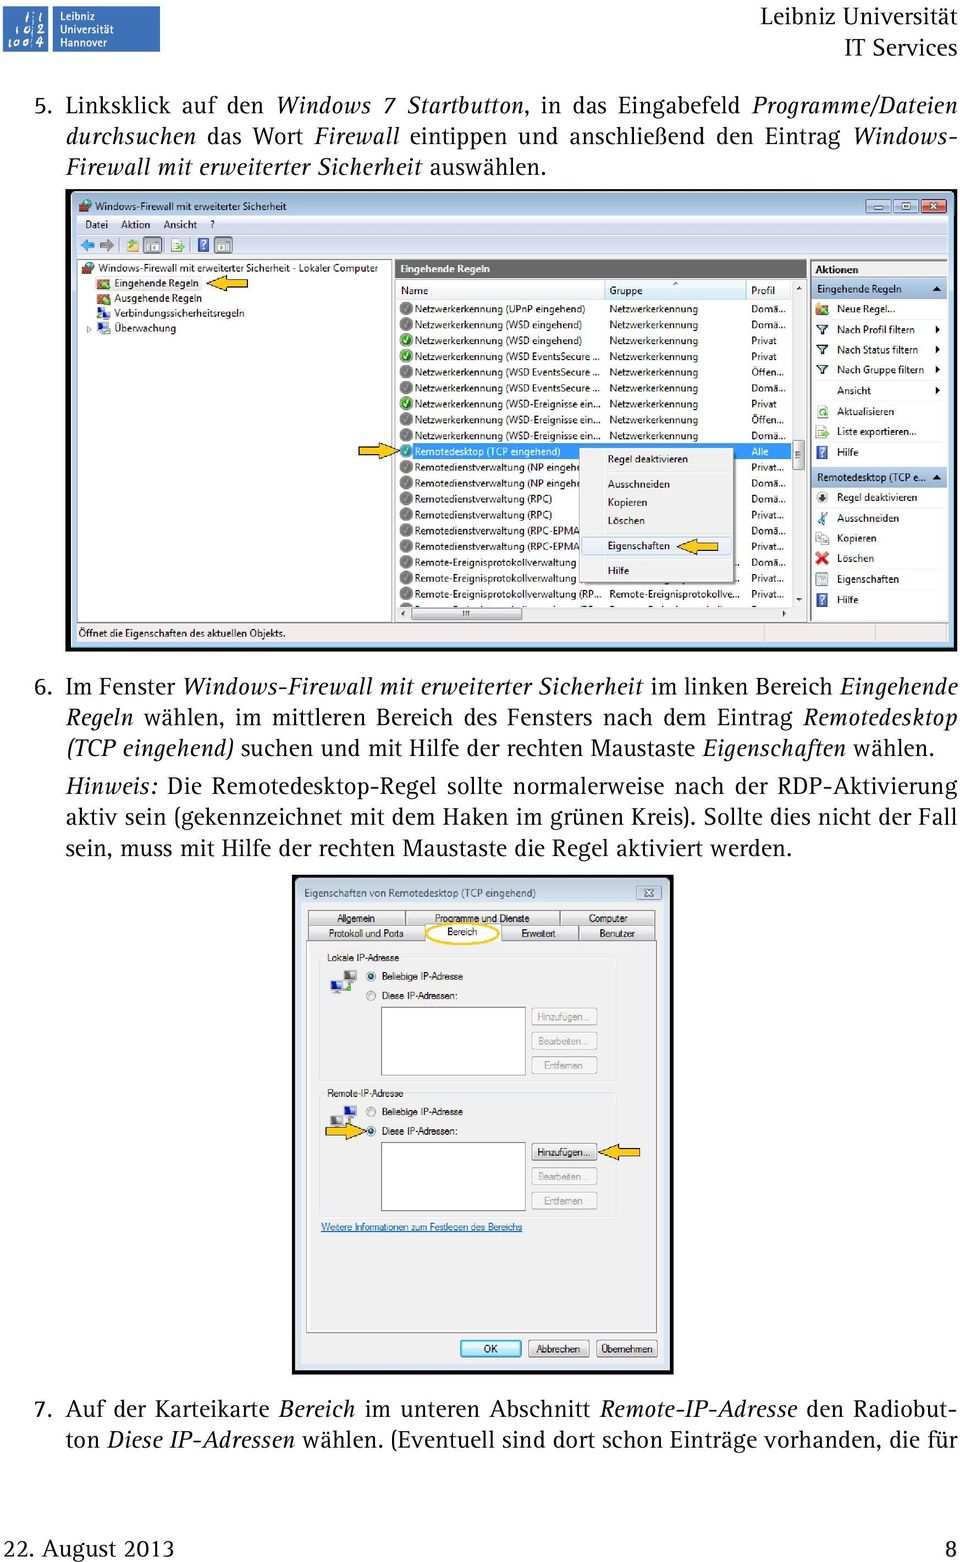 Im Fenster Windows-Firewall mit erweiterter Sicherheit im linken Bereich Eingehende Regeln wählen, im mittleren Bereich des Fensters nach dem Eintrag Remotedesktop (TCP eingehend) suchen und mit